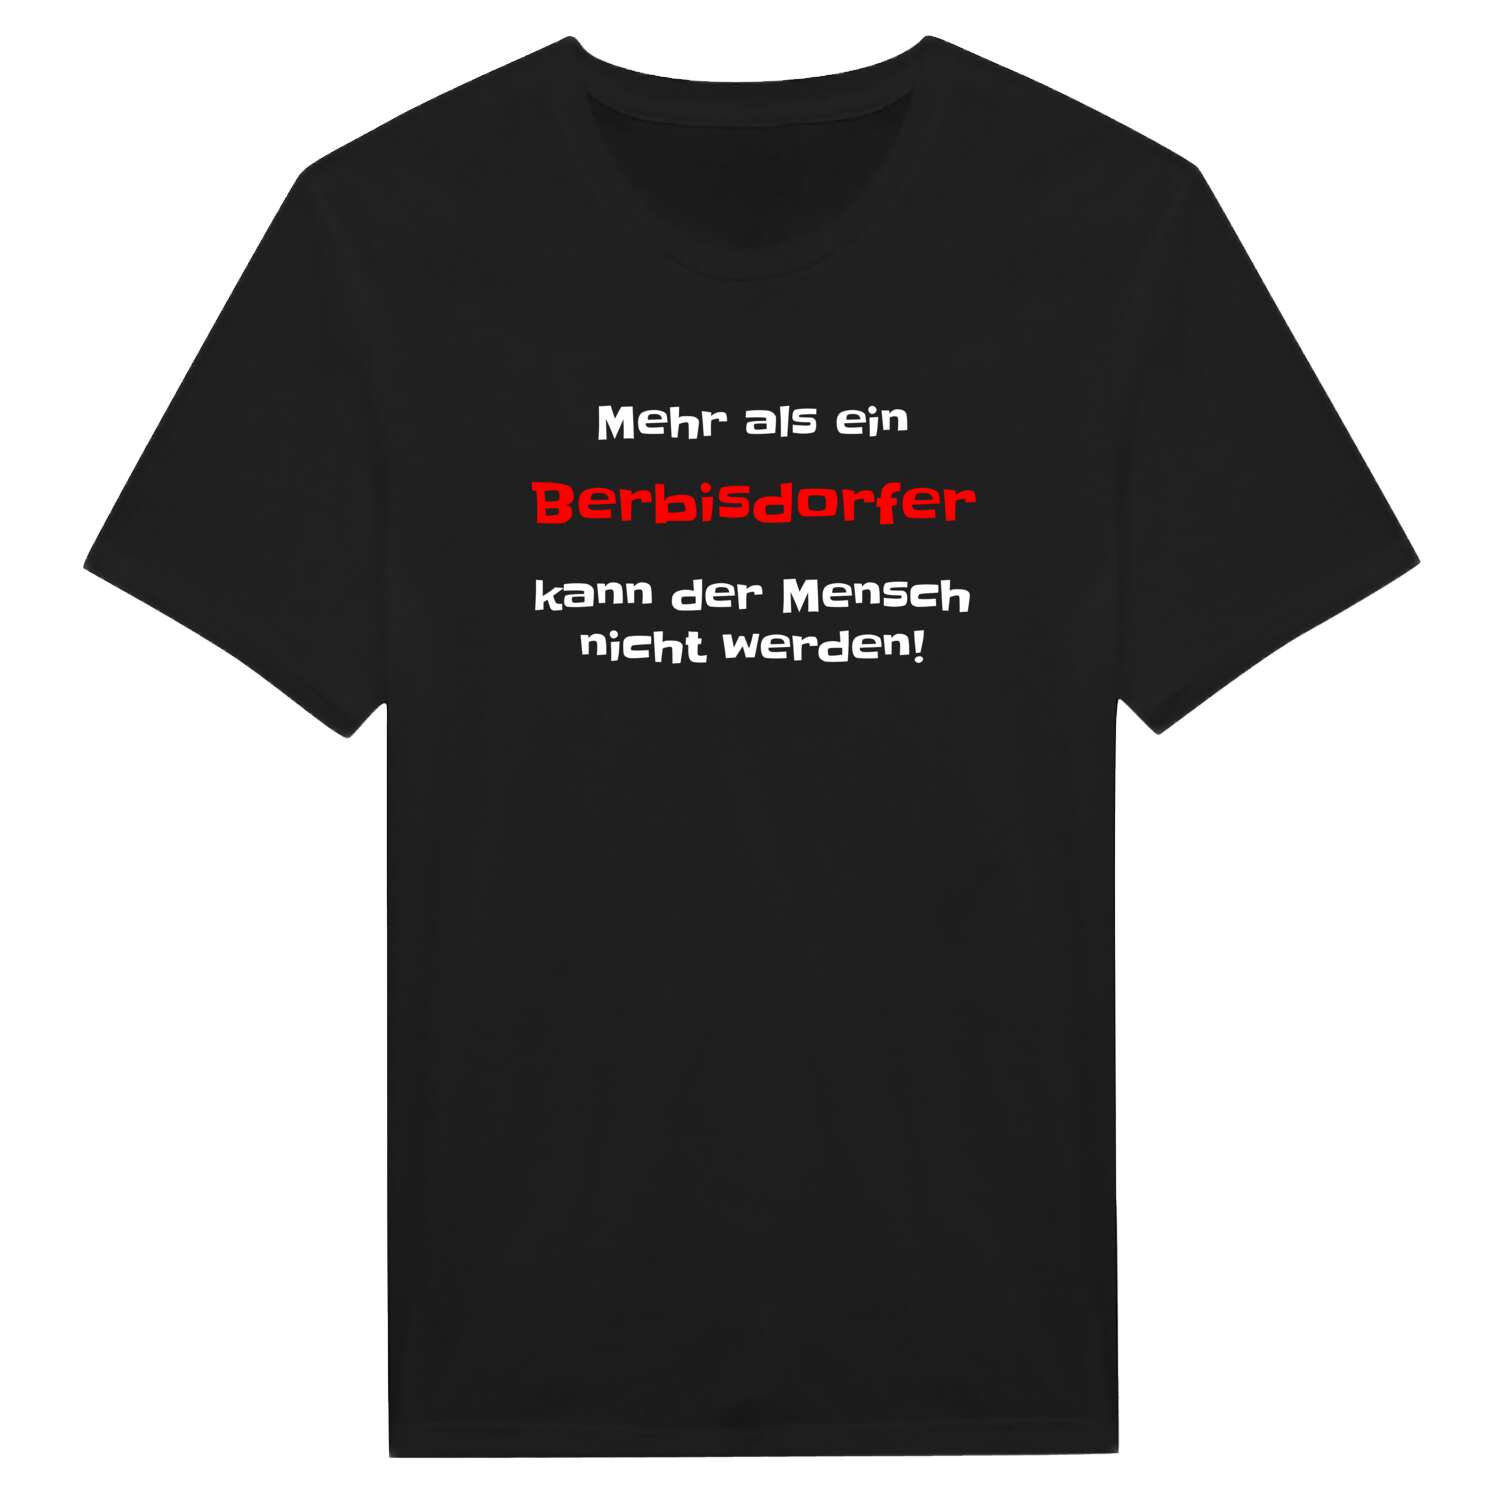 Berbisdorf T-Shirt »Mehr als ein«